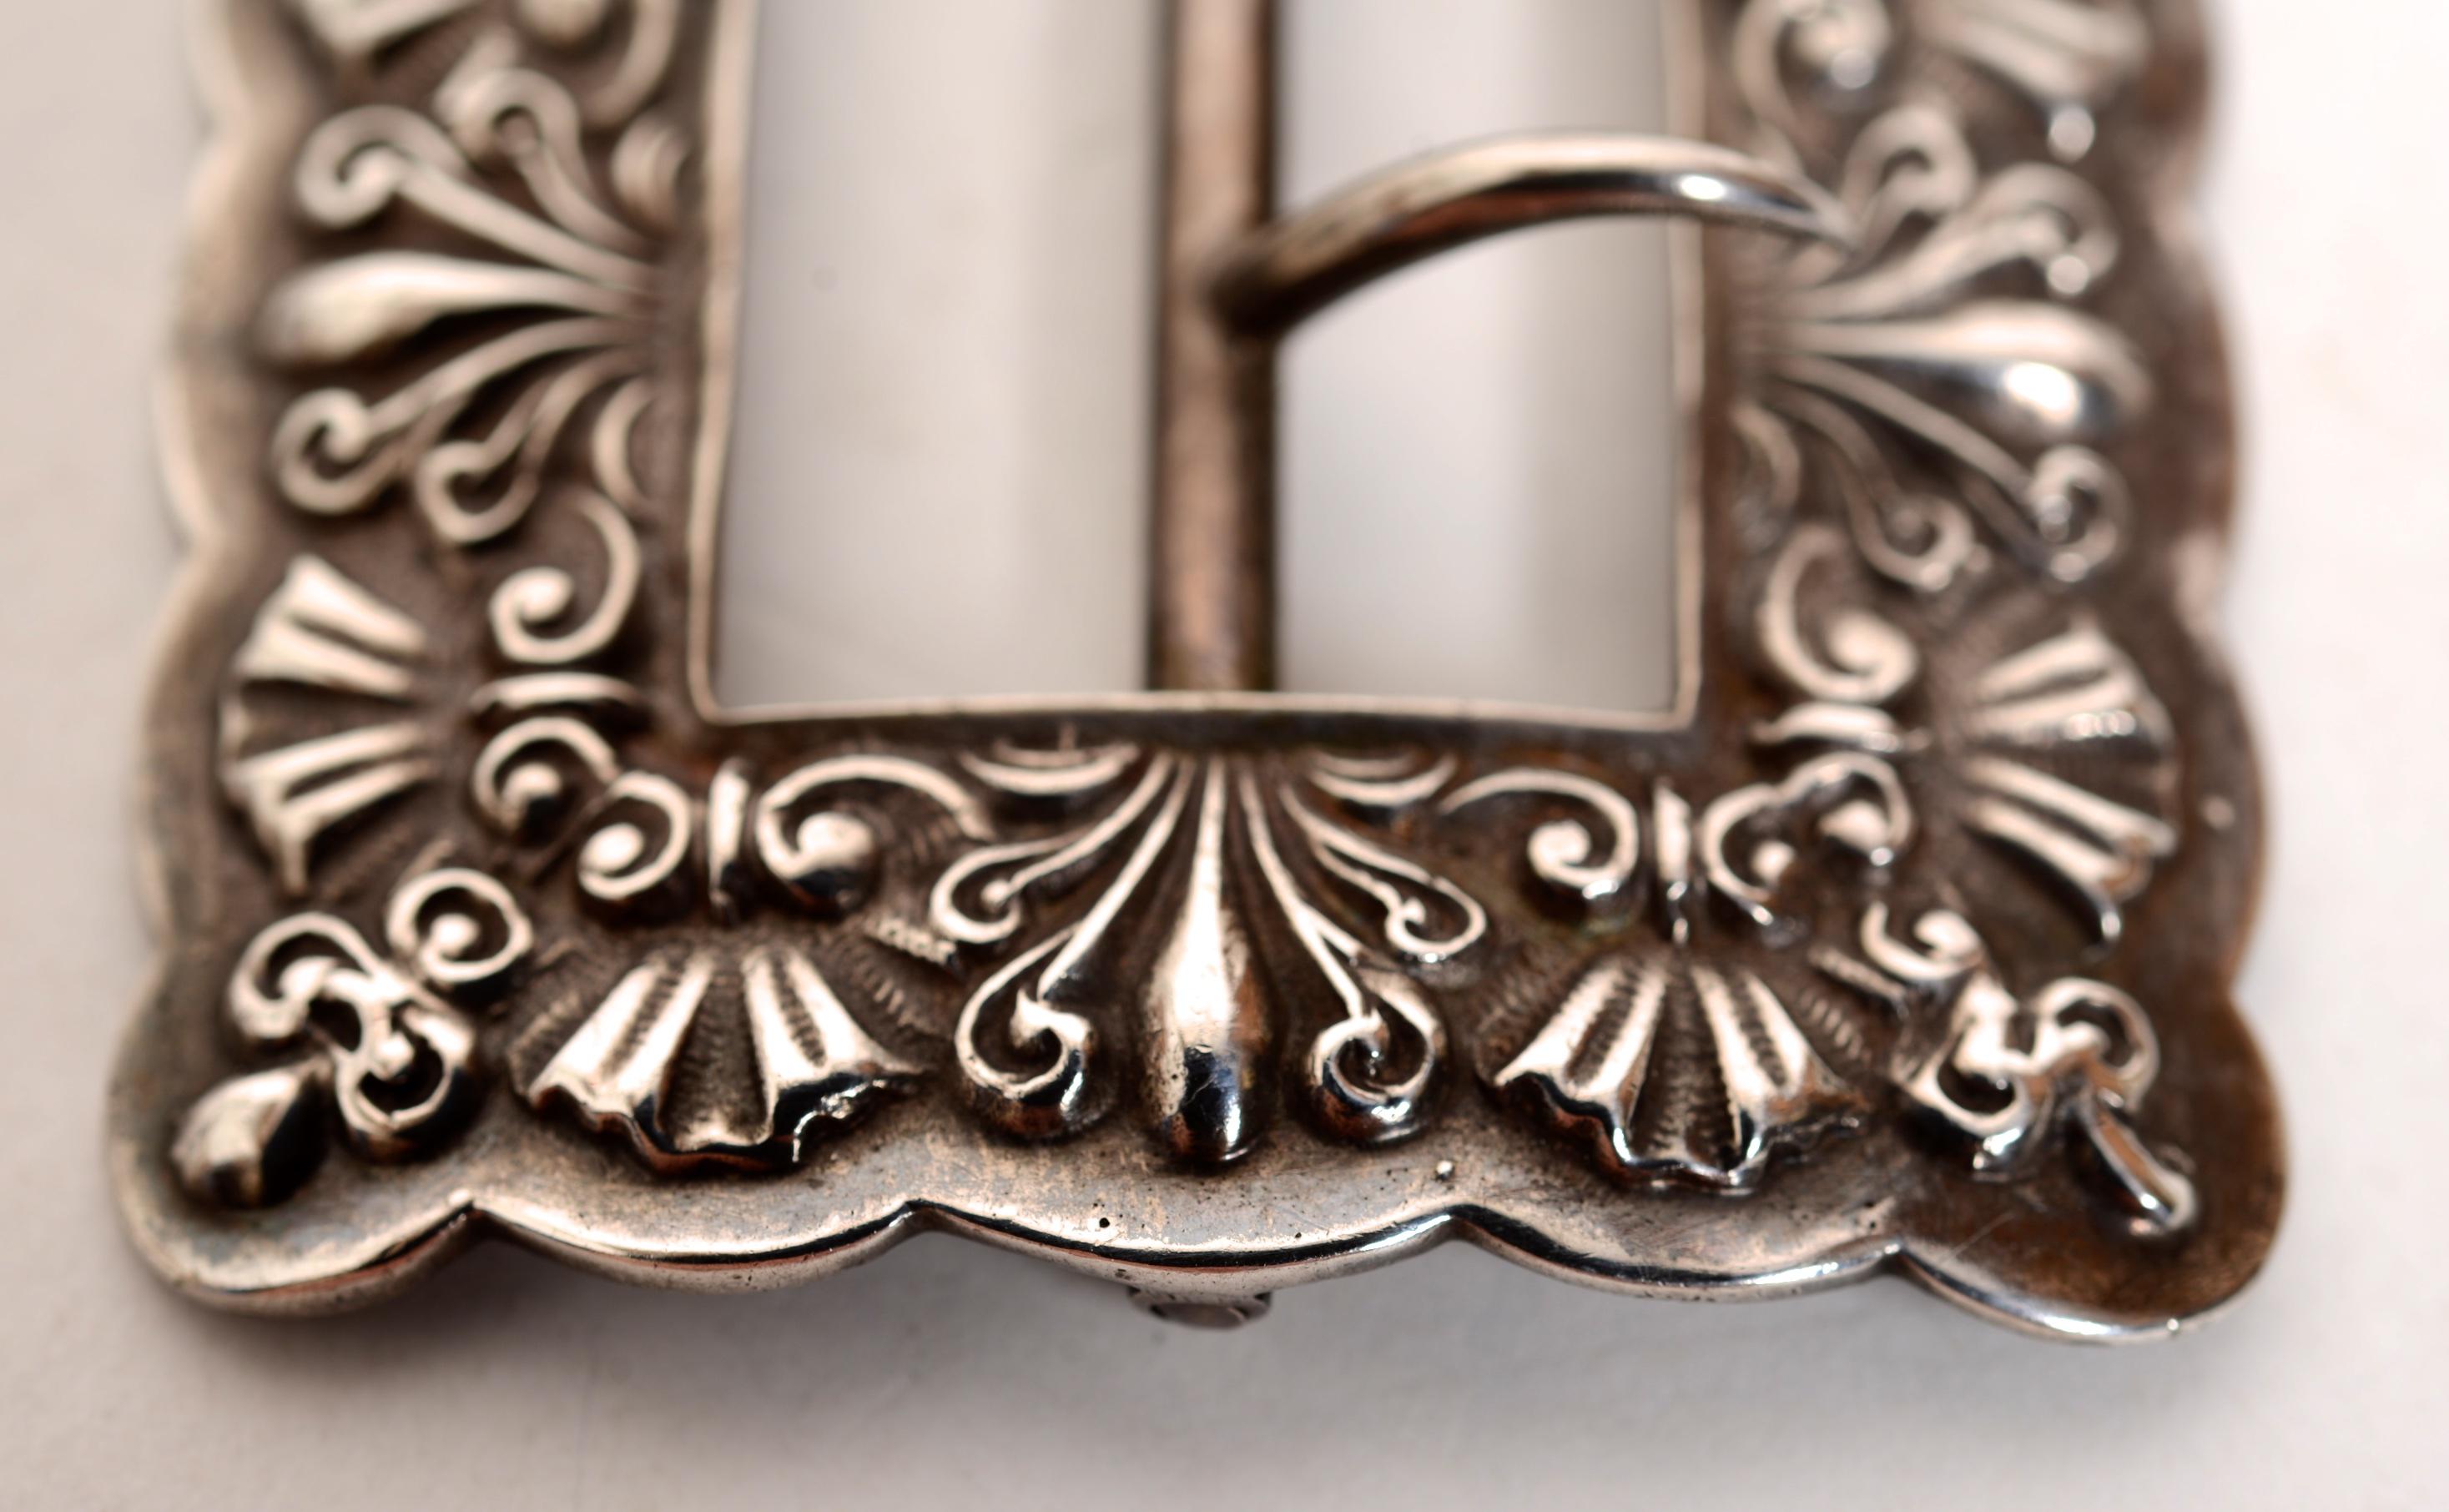 Gorham Sterling Silber Gürtelschnalle #144, um 1888.  Das Design aus stilisierten Blumen und Muscheln ist klar und hat eine schöne Patina. Der Mittelteil lässt sich leicht bewegen. Es wurden keine Reparaturen durchgeführt. 
Diese Schnallen werden